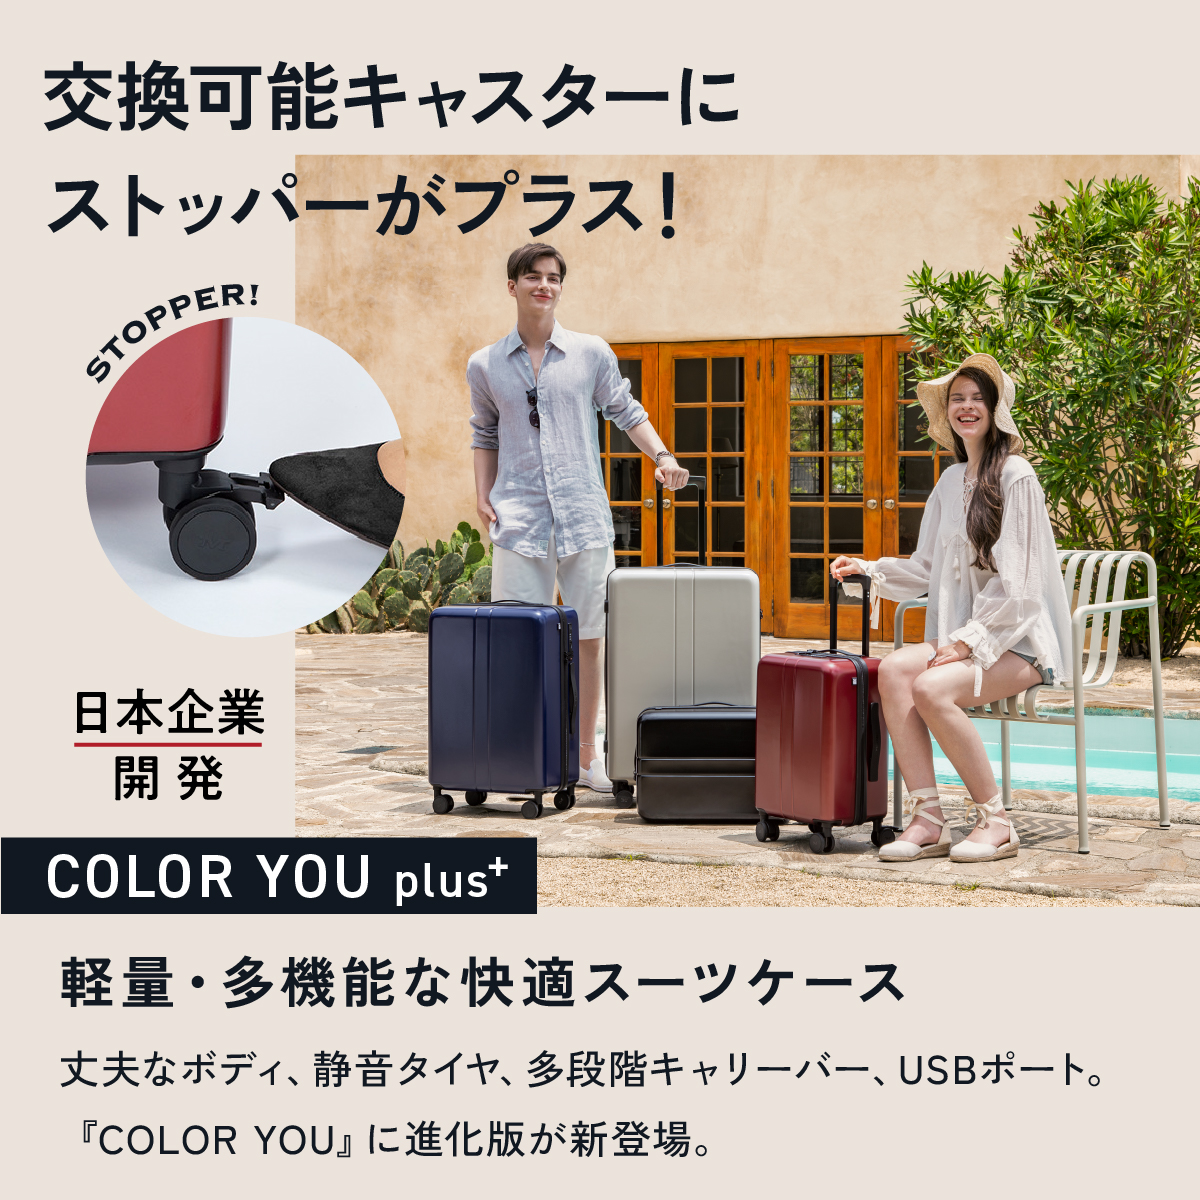 楽天市場】MAIMO スーツケース Sサイズ Mサイズ Lサイズ 機内持ち込み